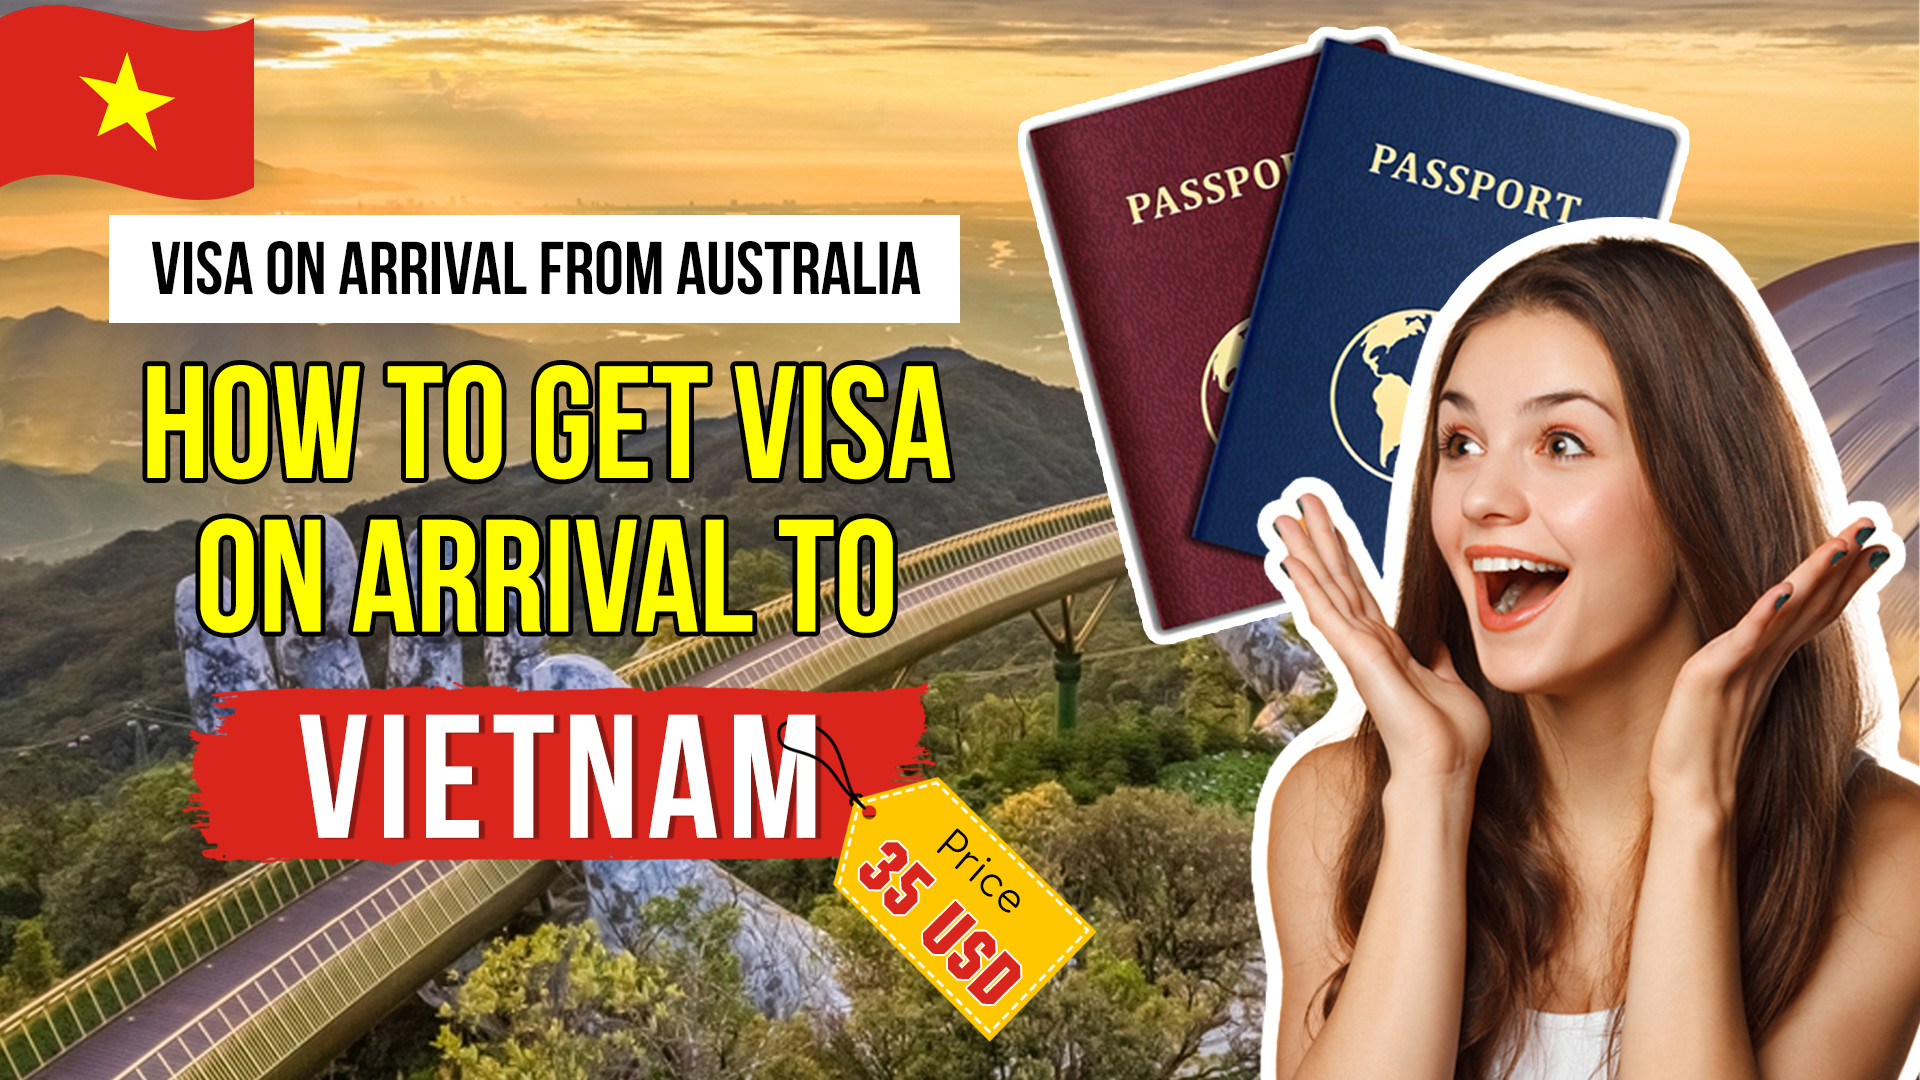 Vietnam visa overdue - How to punish?